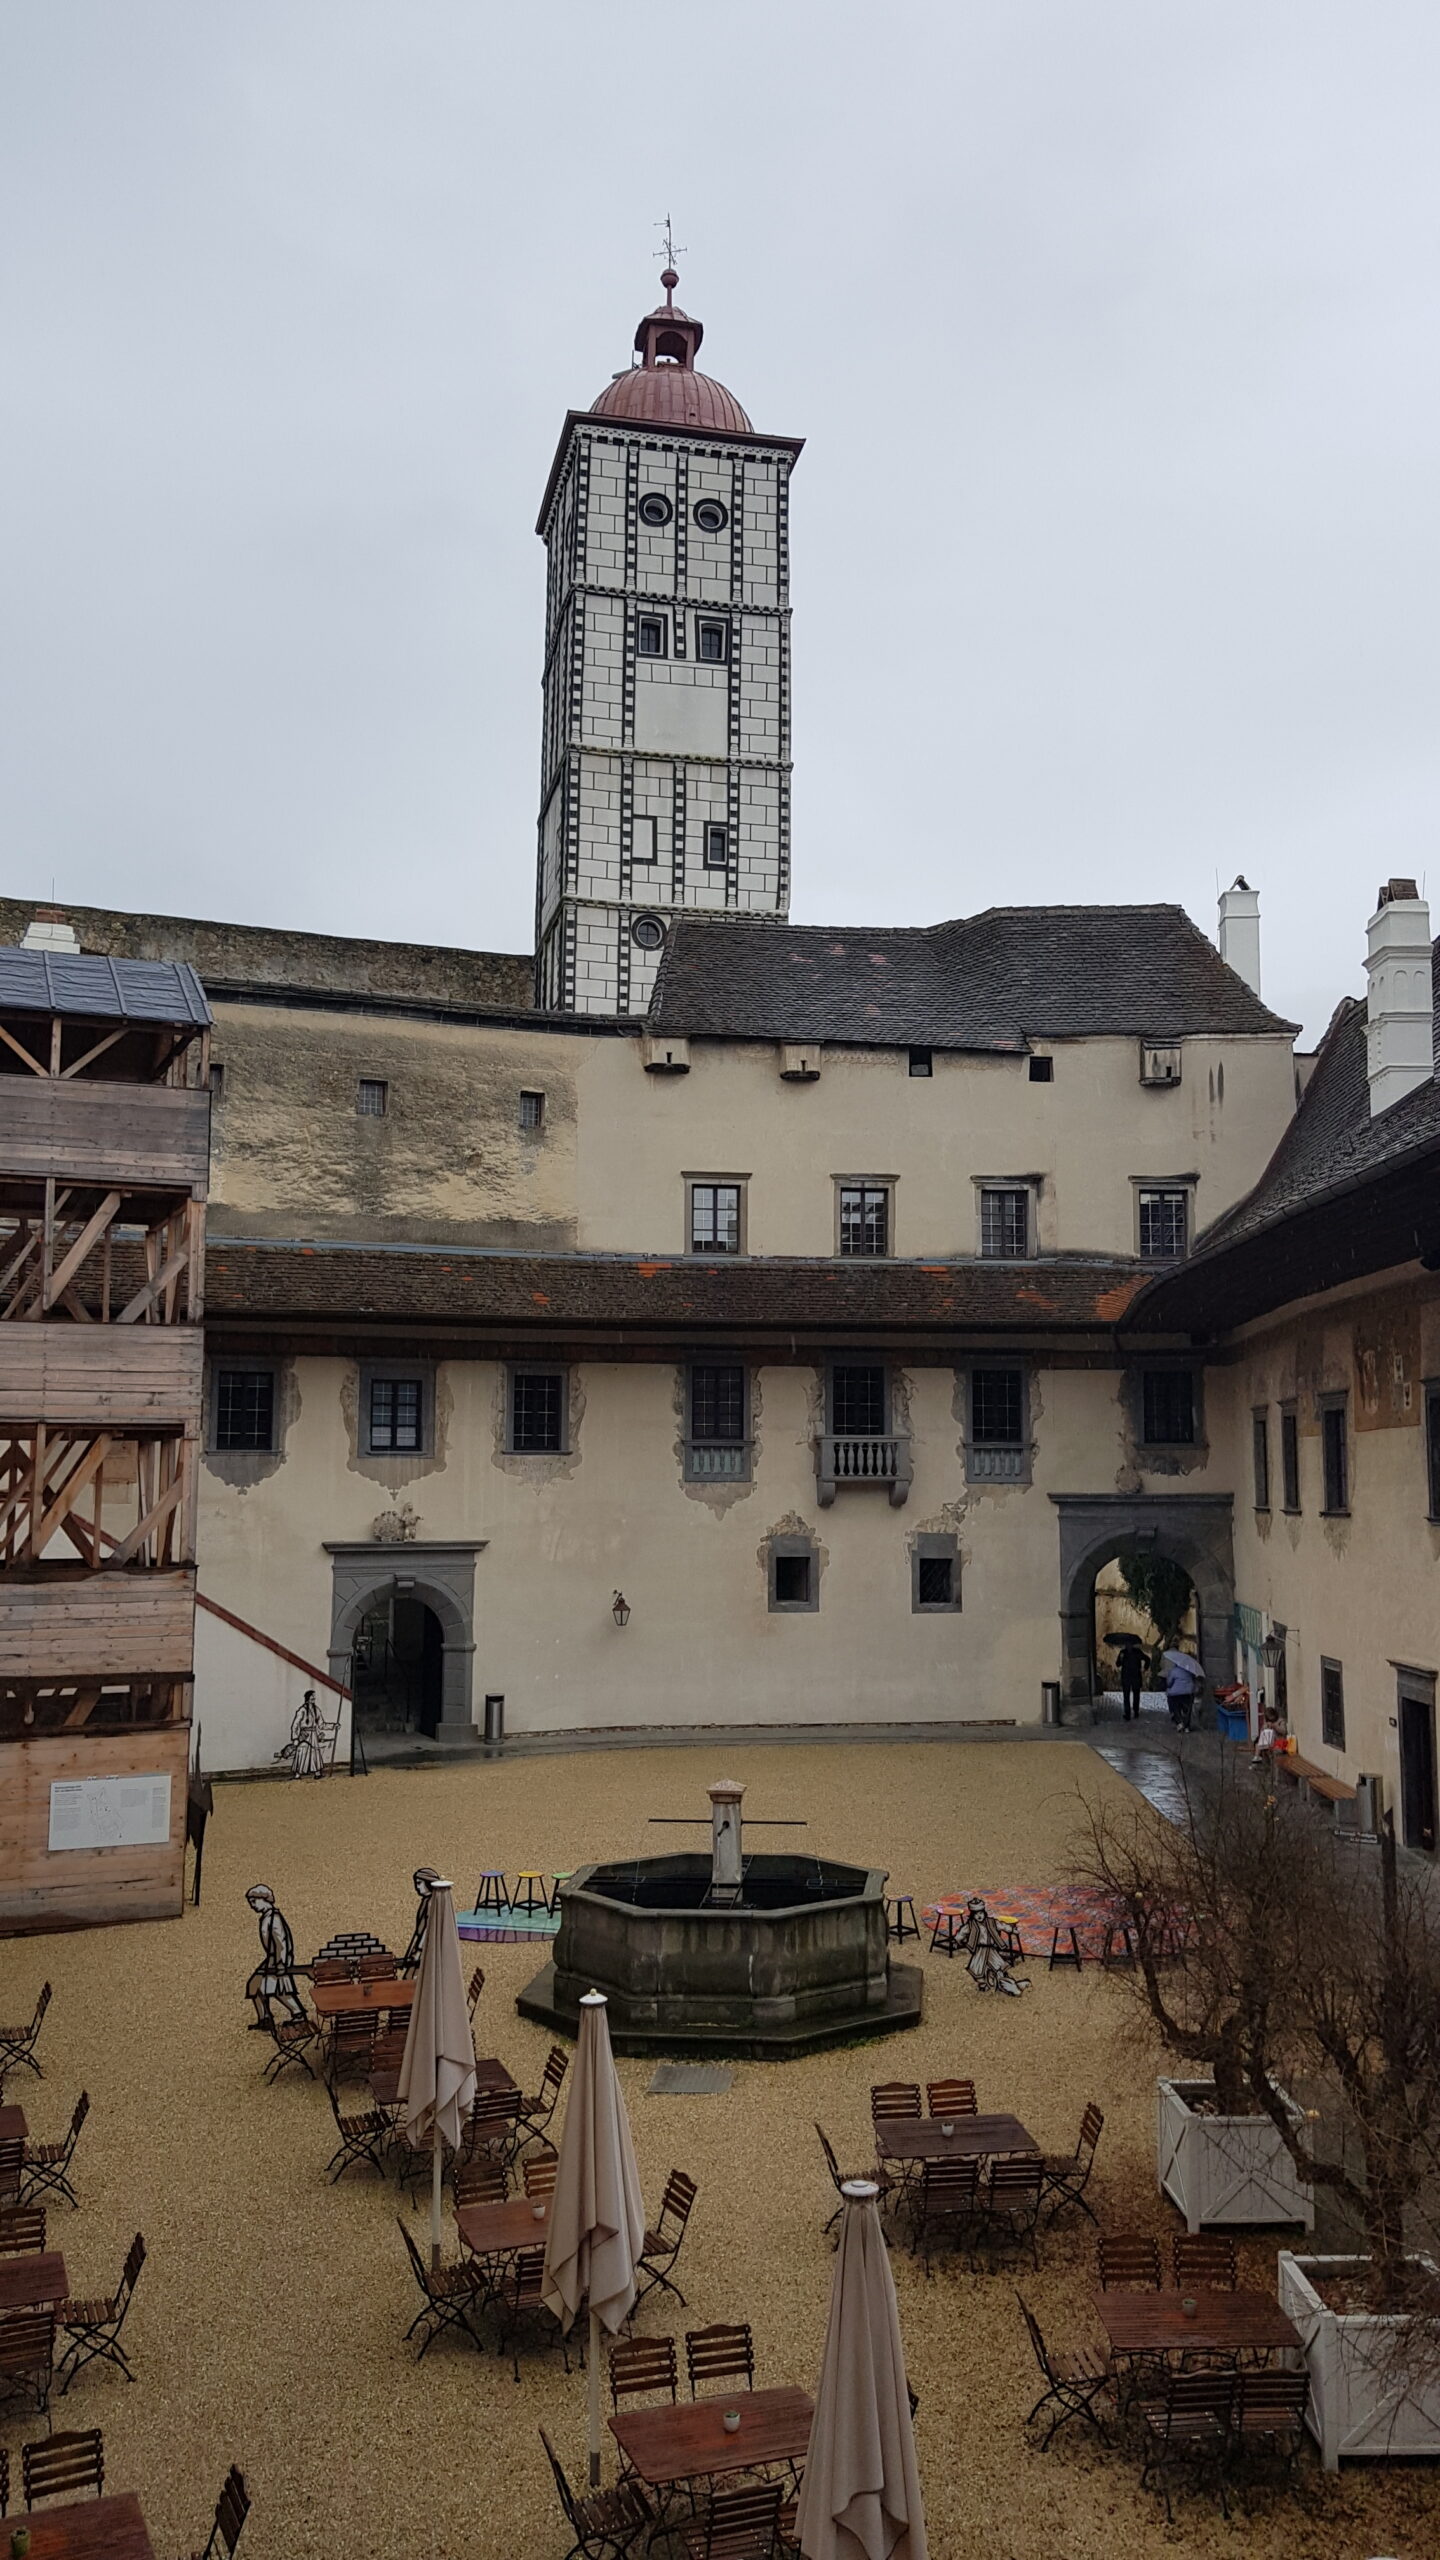 Posjet izložbi “Reiternomaden in Europa: Hunnen, Awaren, Bulgaren, Ungarn” i benediktinskom samostanu Melk u Austriji